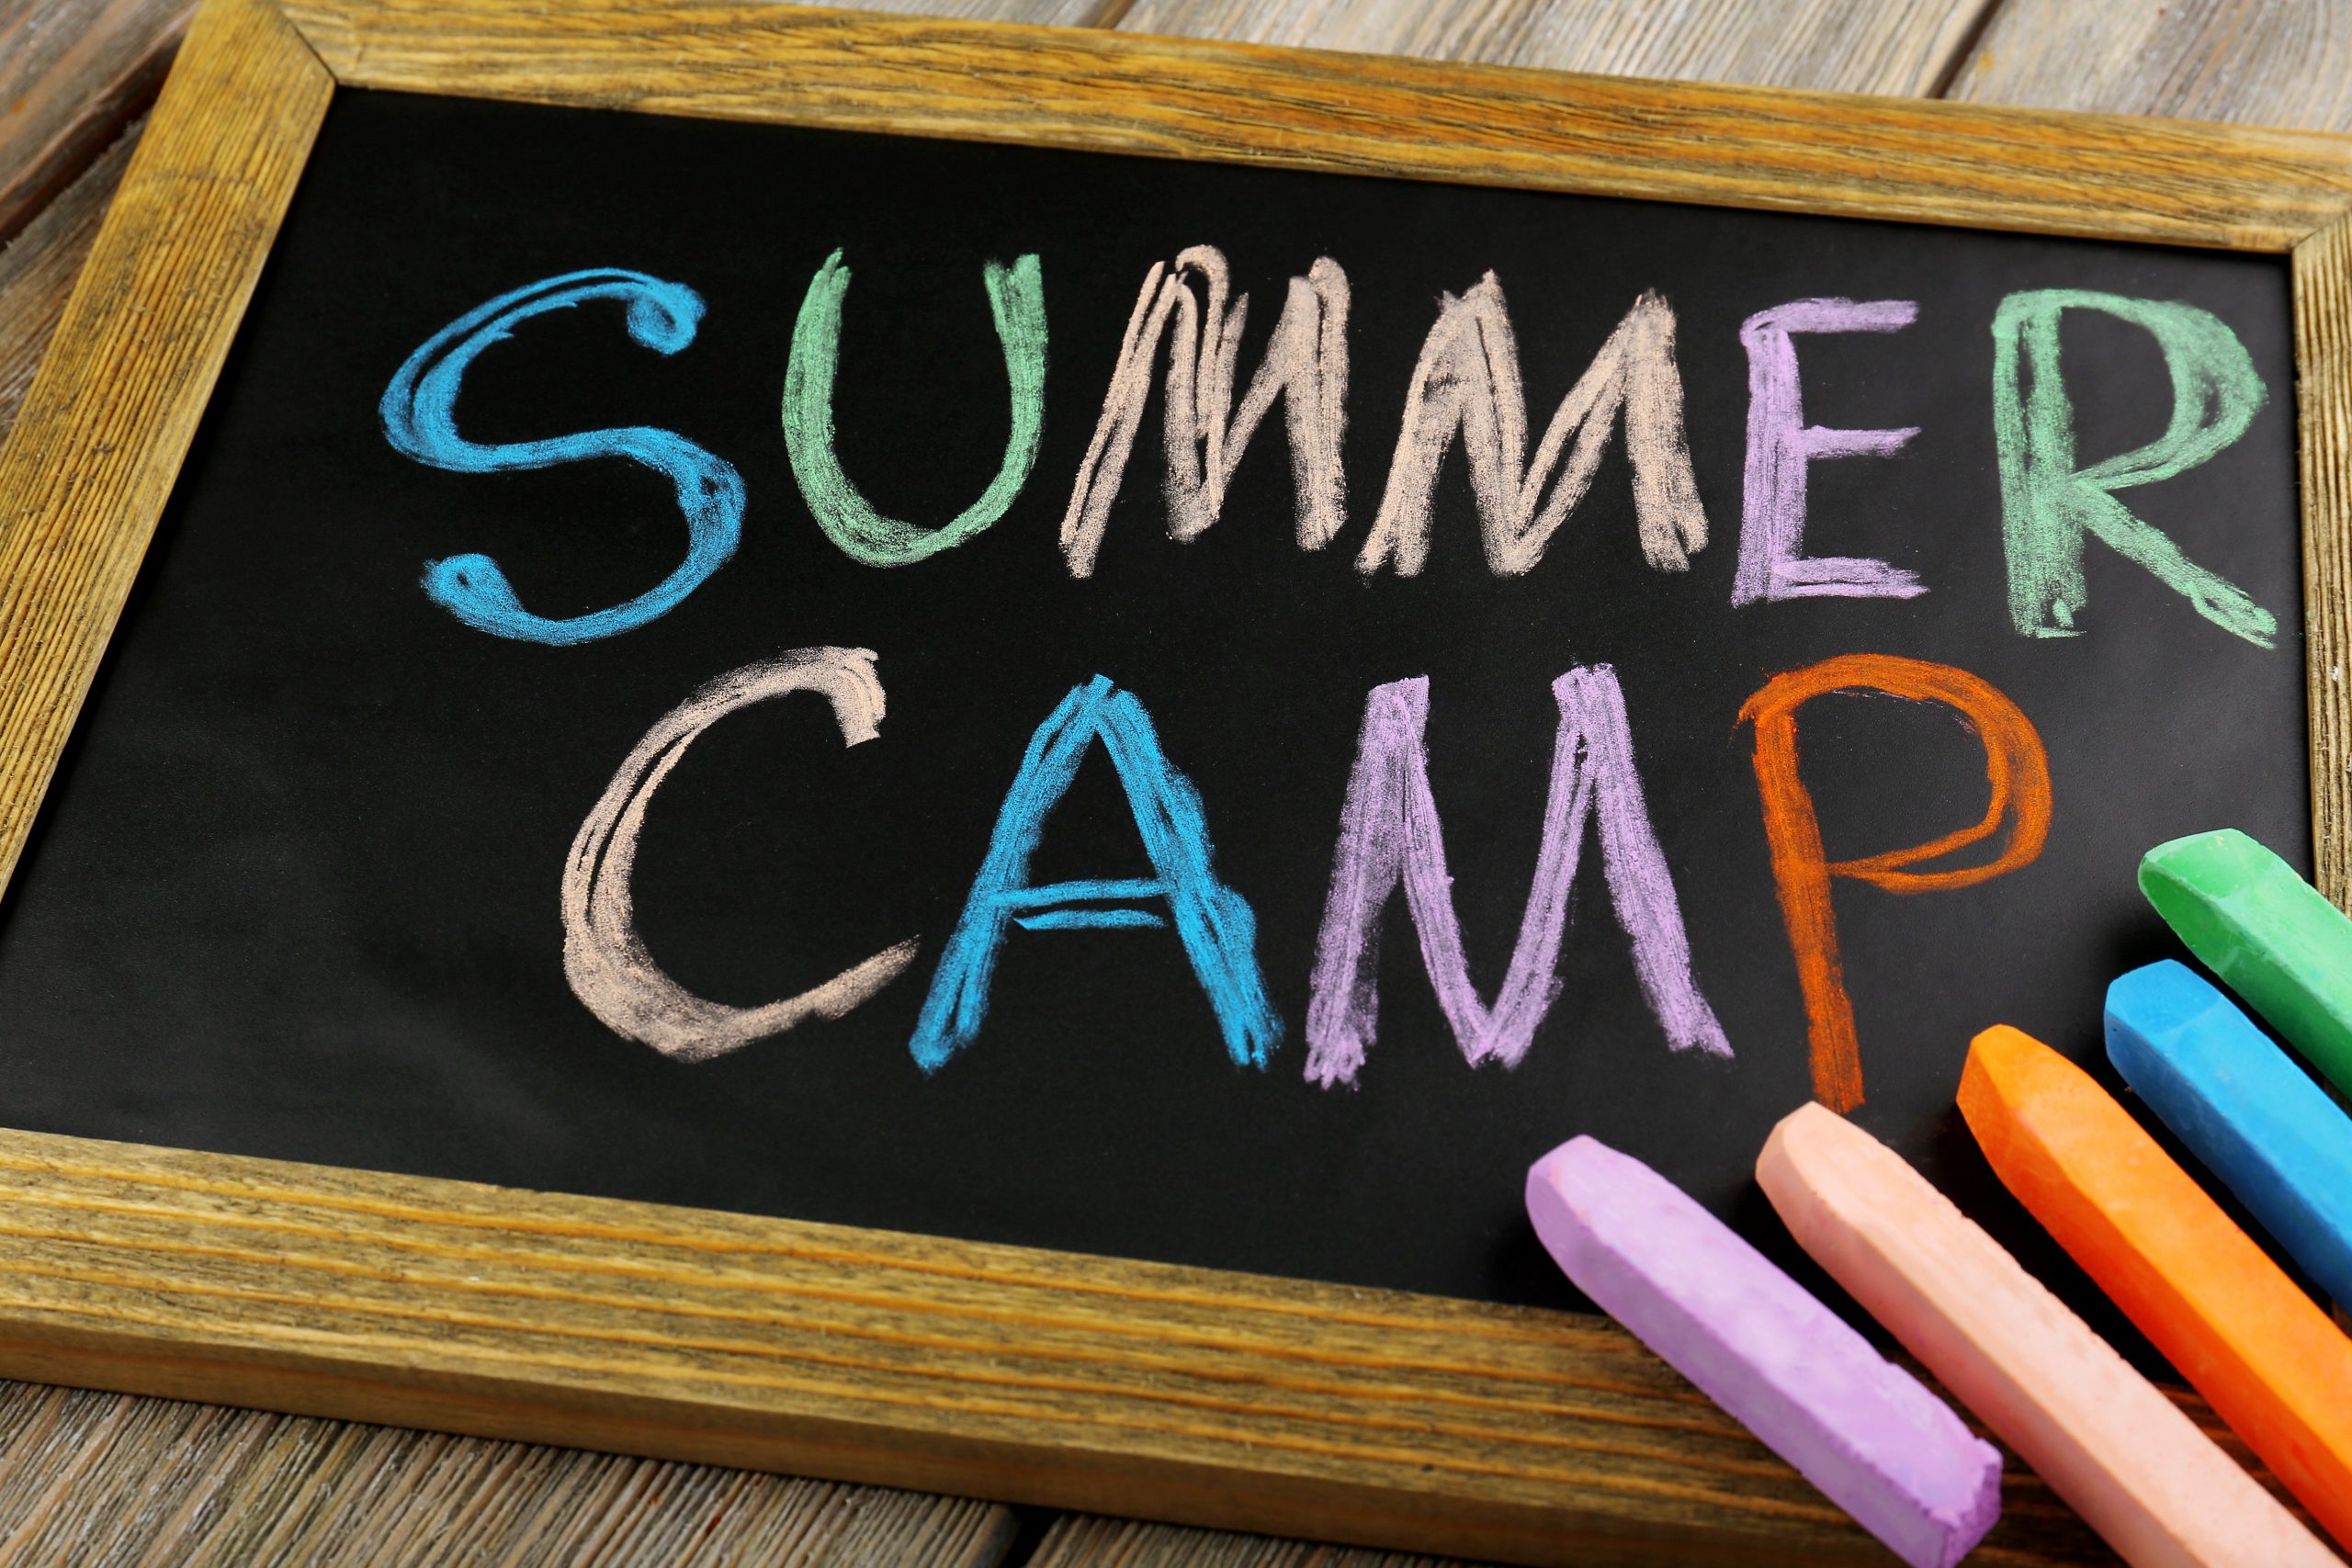 Summer Camp at the Shandon!